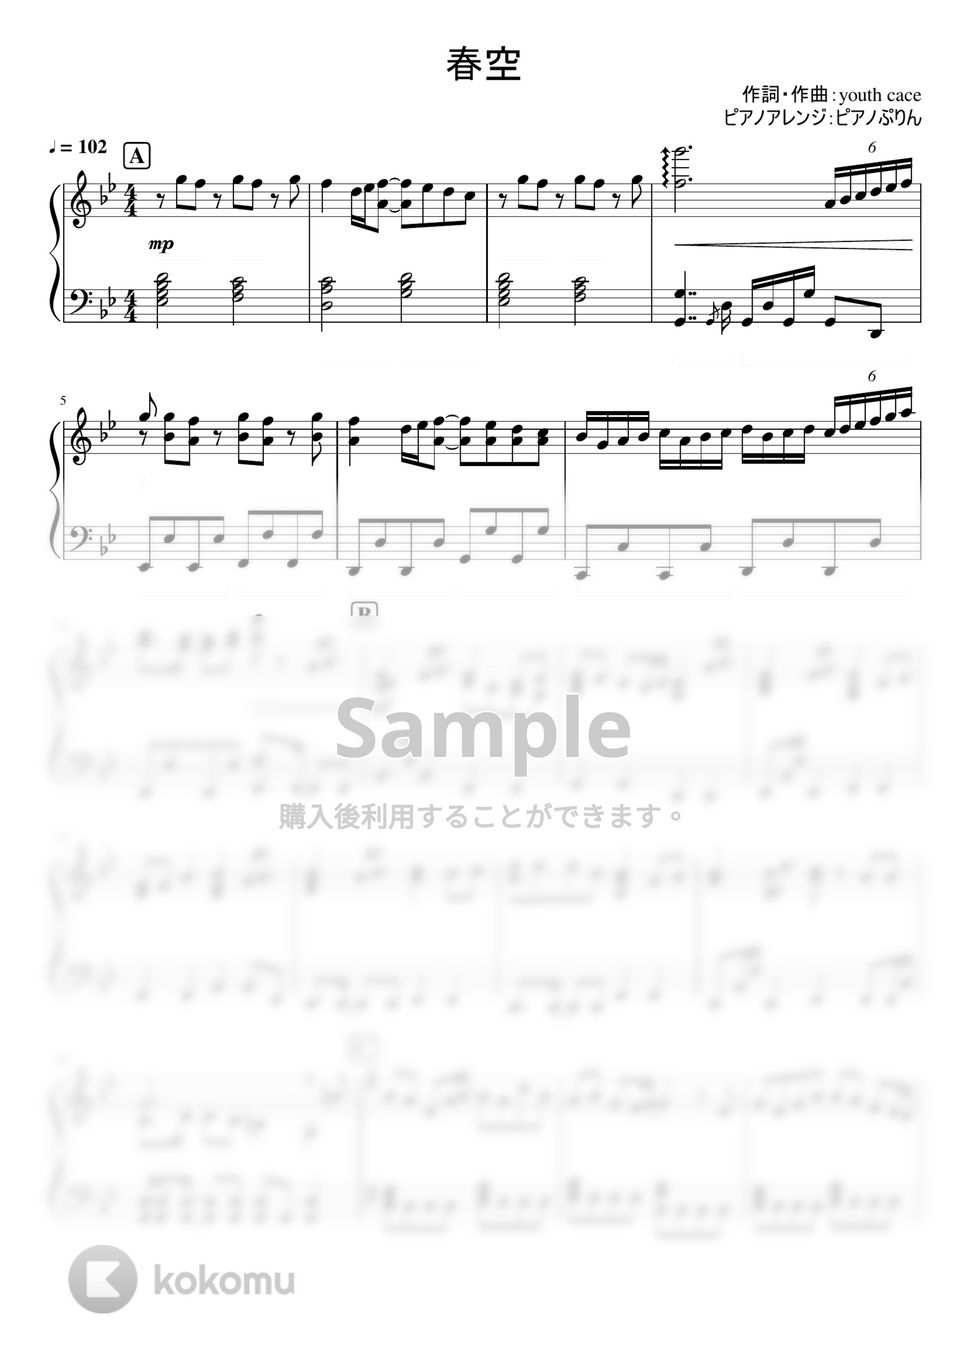 なにわ男子 - 春空 (なにわ男子 4th Single『Special Kiss』) by ピアノぷりん